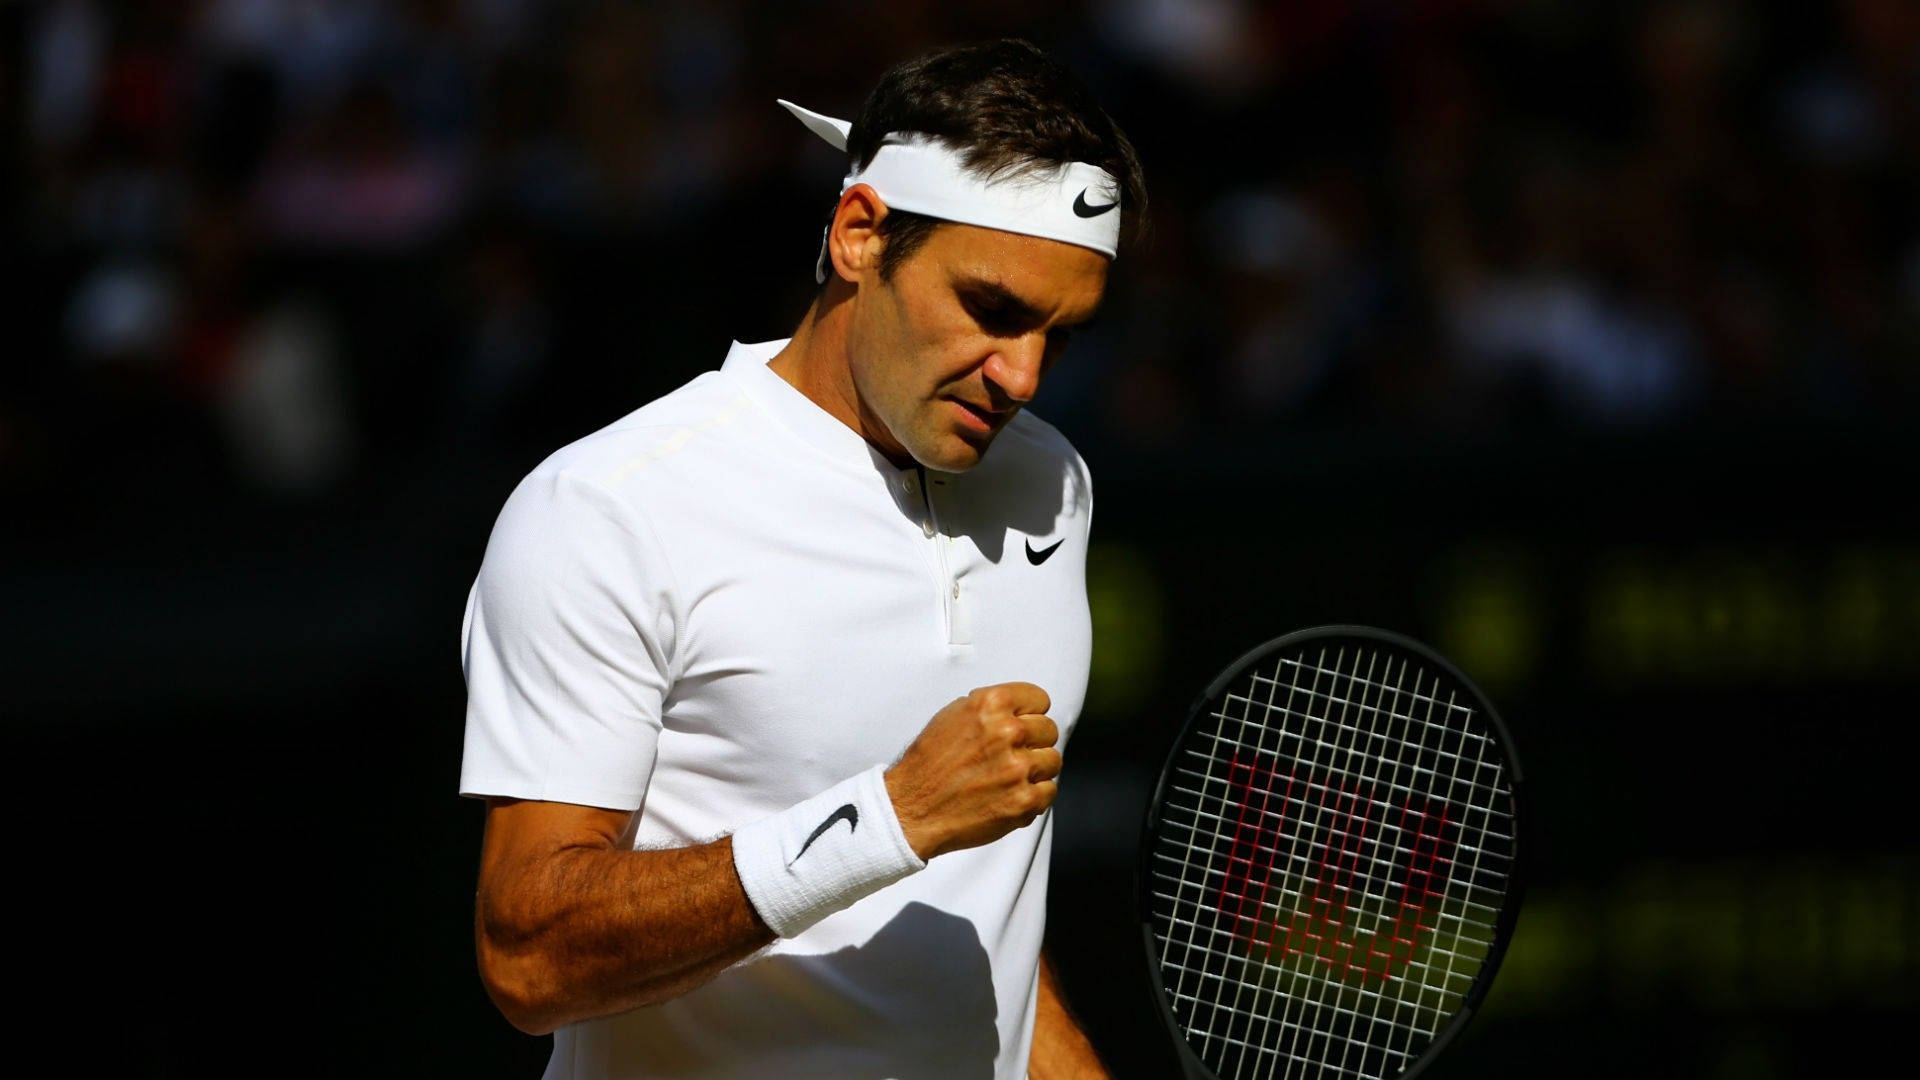 Wimbledonmästareroger Federer Candid. Wallpaper